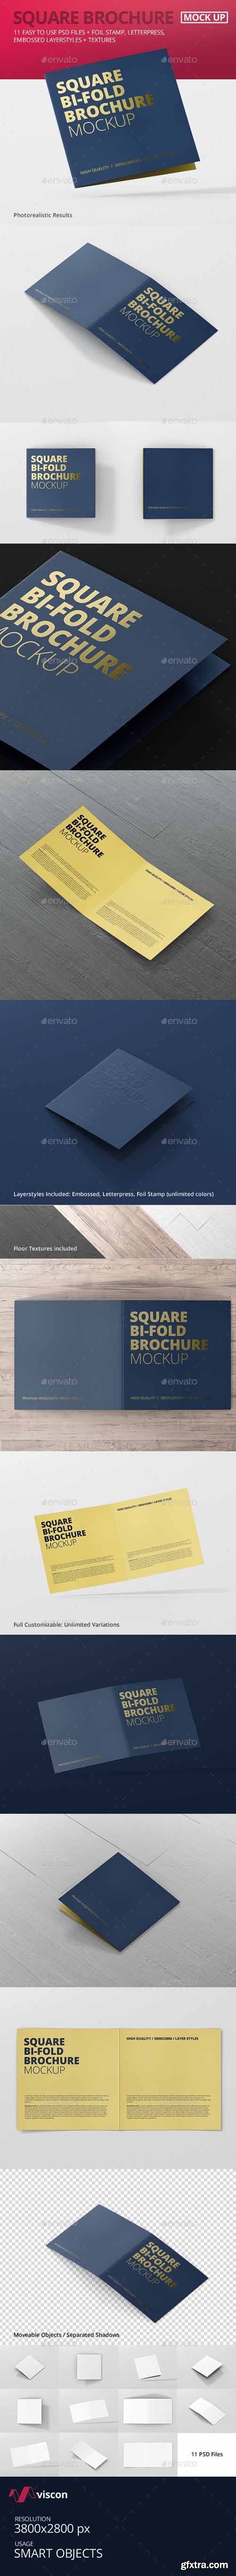 GR - Square Bi-Fold Brochure Mock-Up 13876728